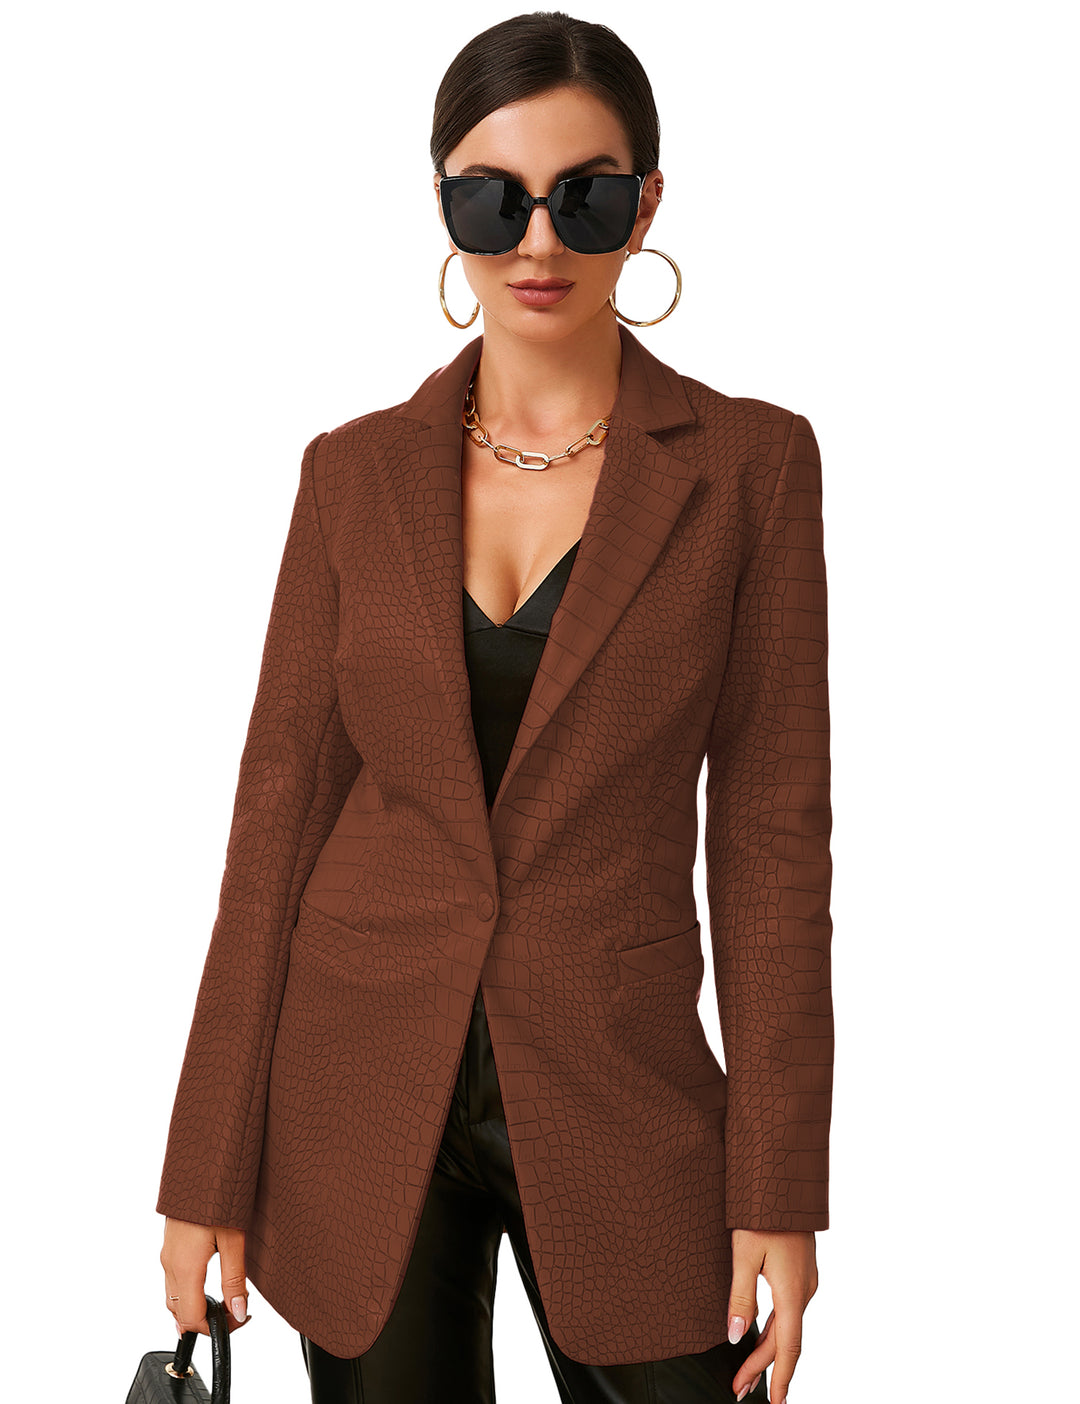 Faux Leather Crocodile Pattern Blazer Jacket In Brown